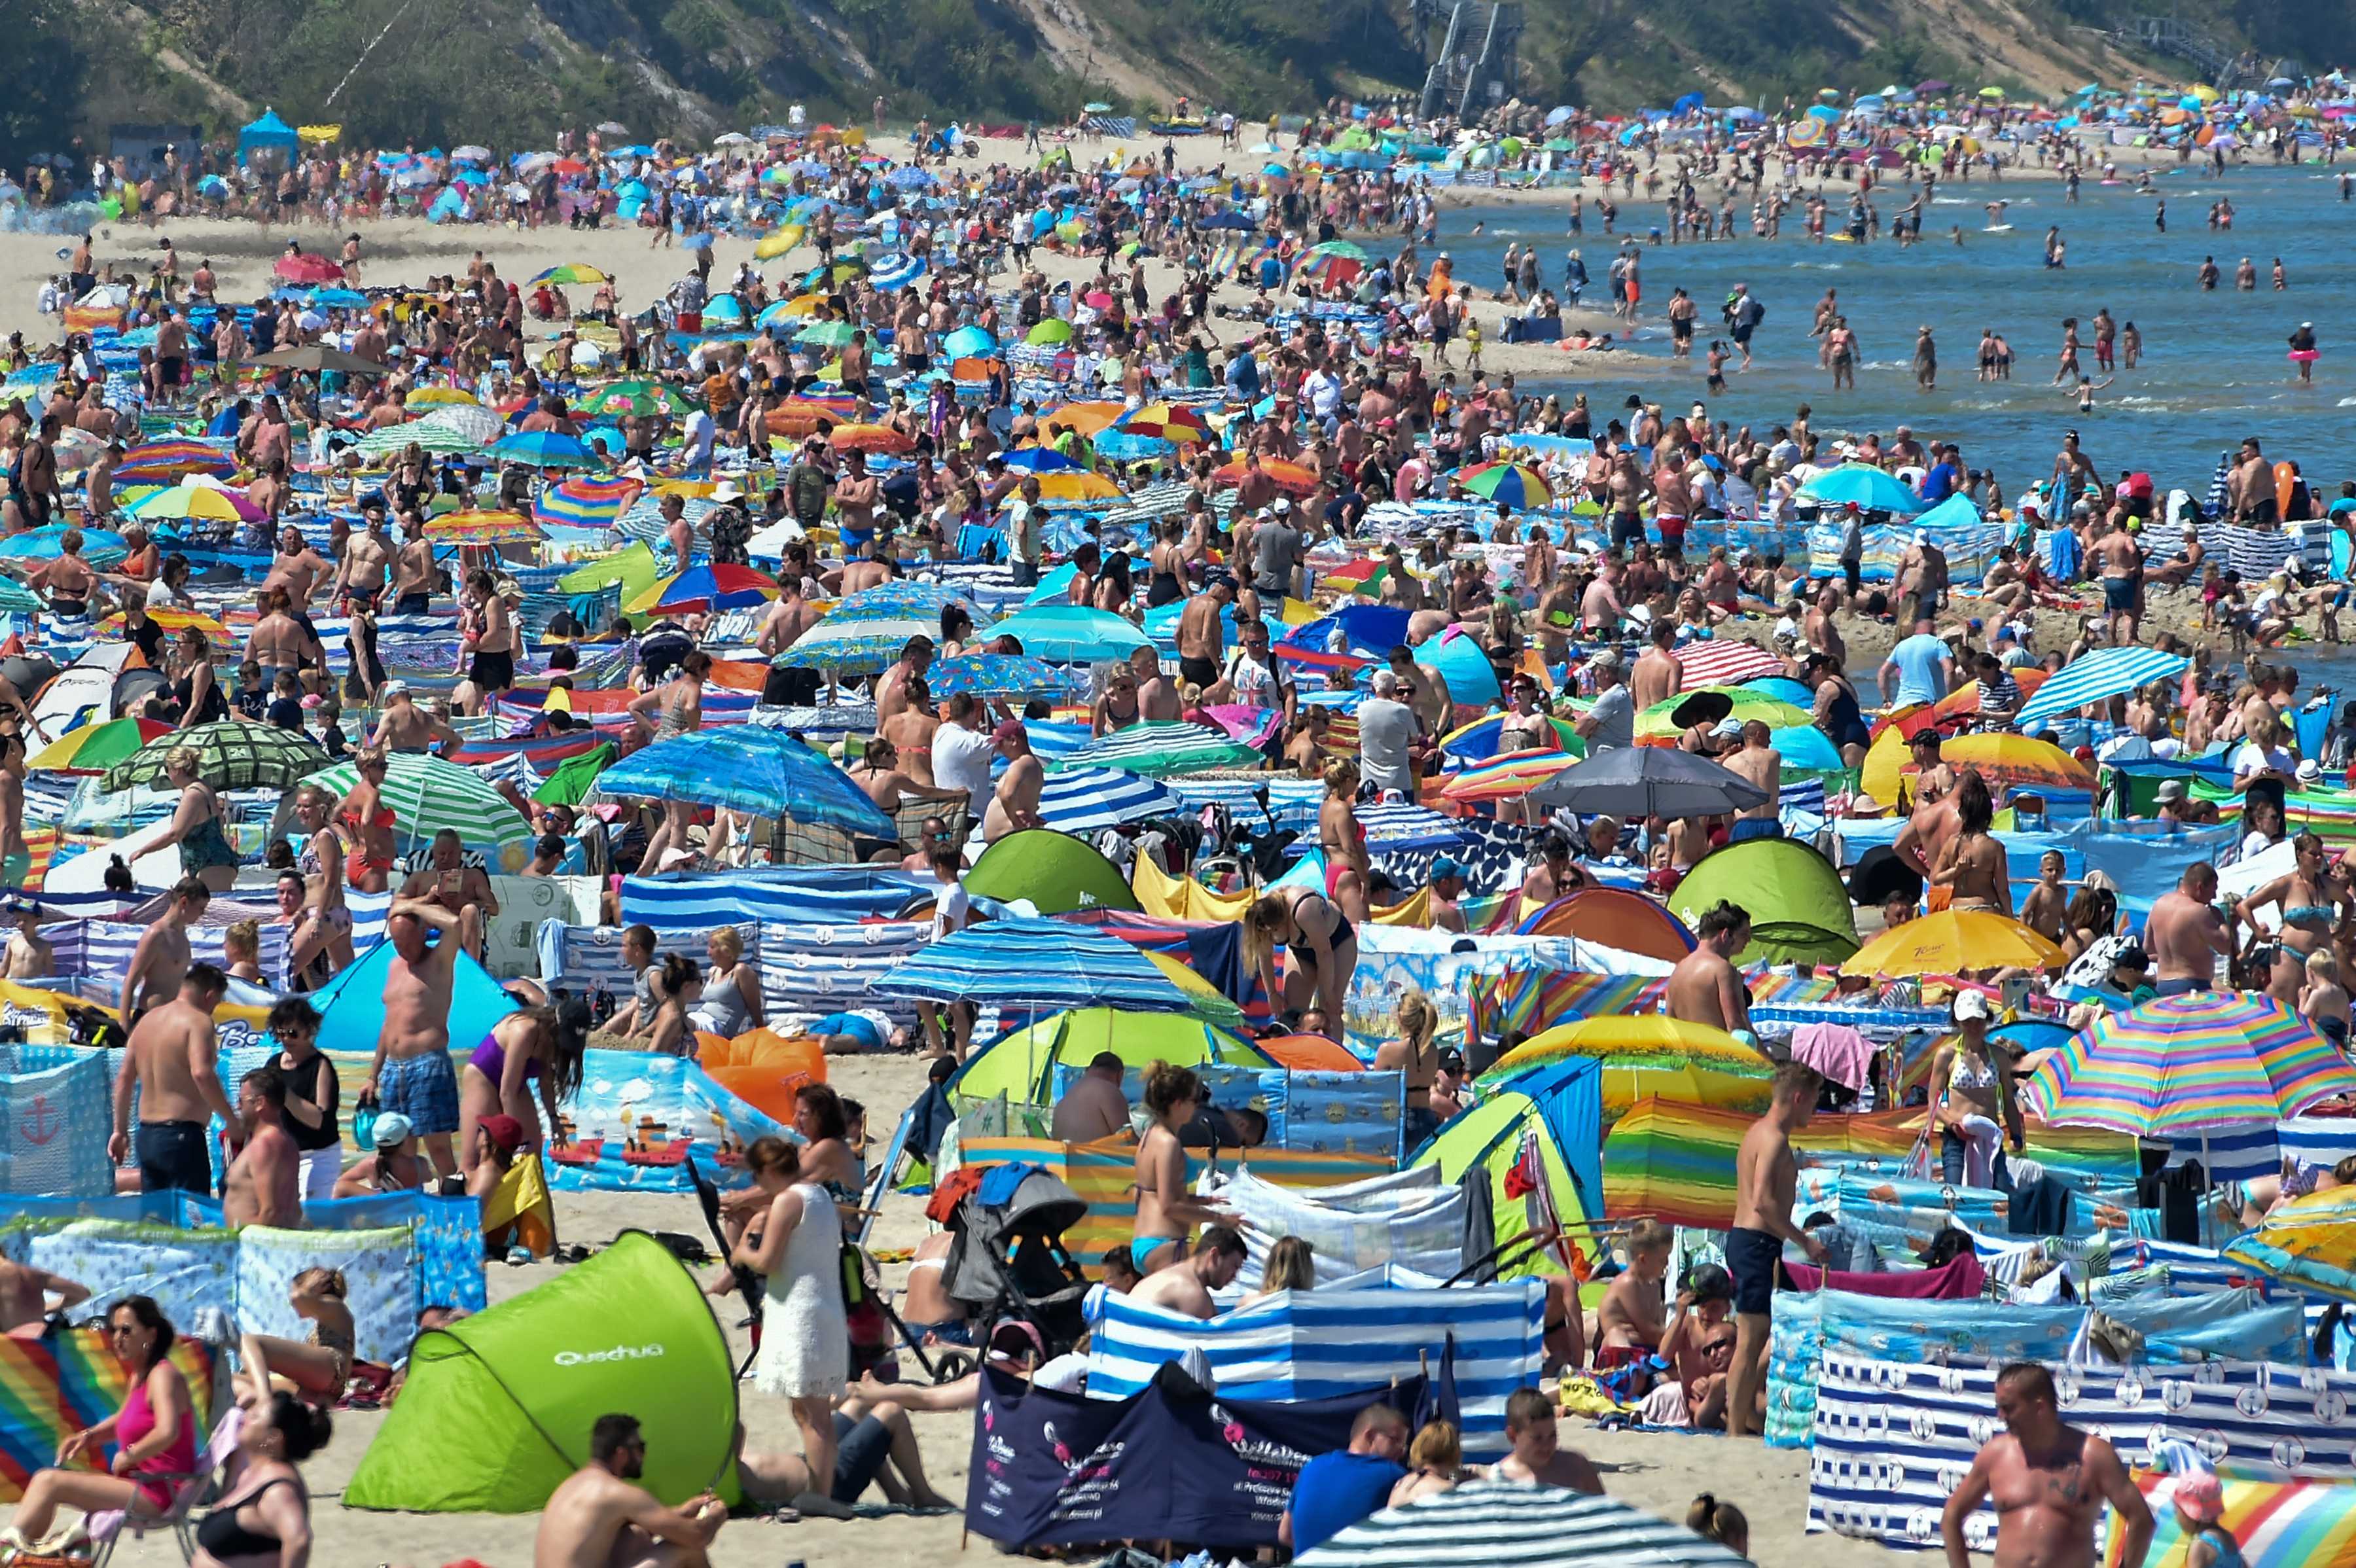 Tłumy na plażach, Polacy cieszą się wolnością. A co robi rząd? To bardzo dziwna sytuacja